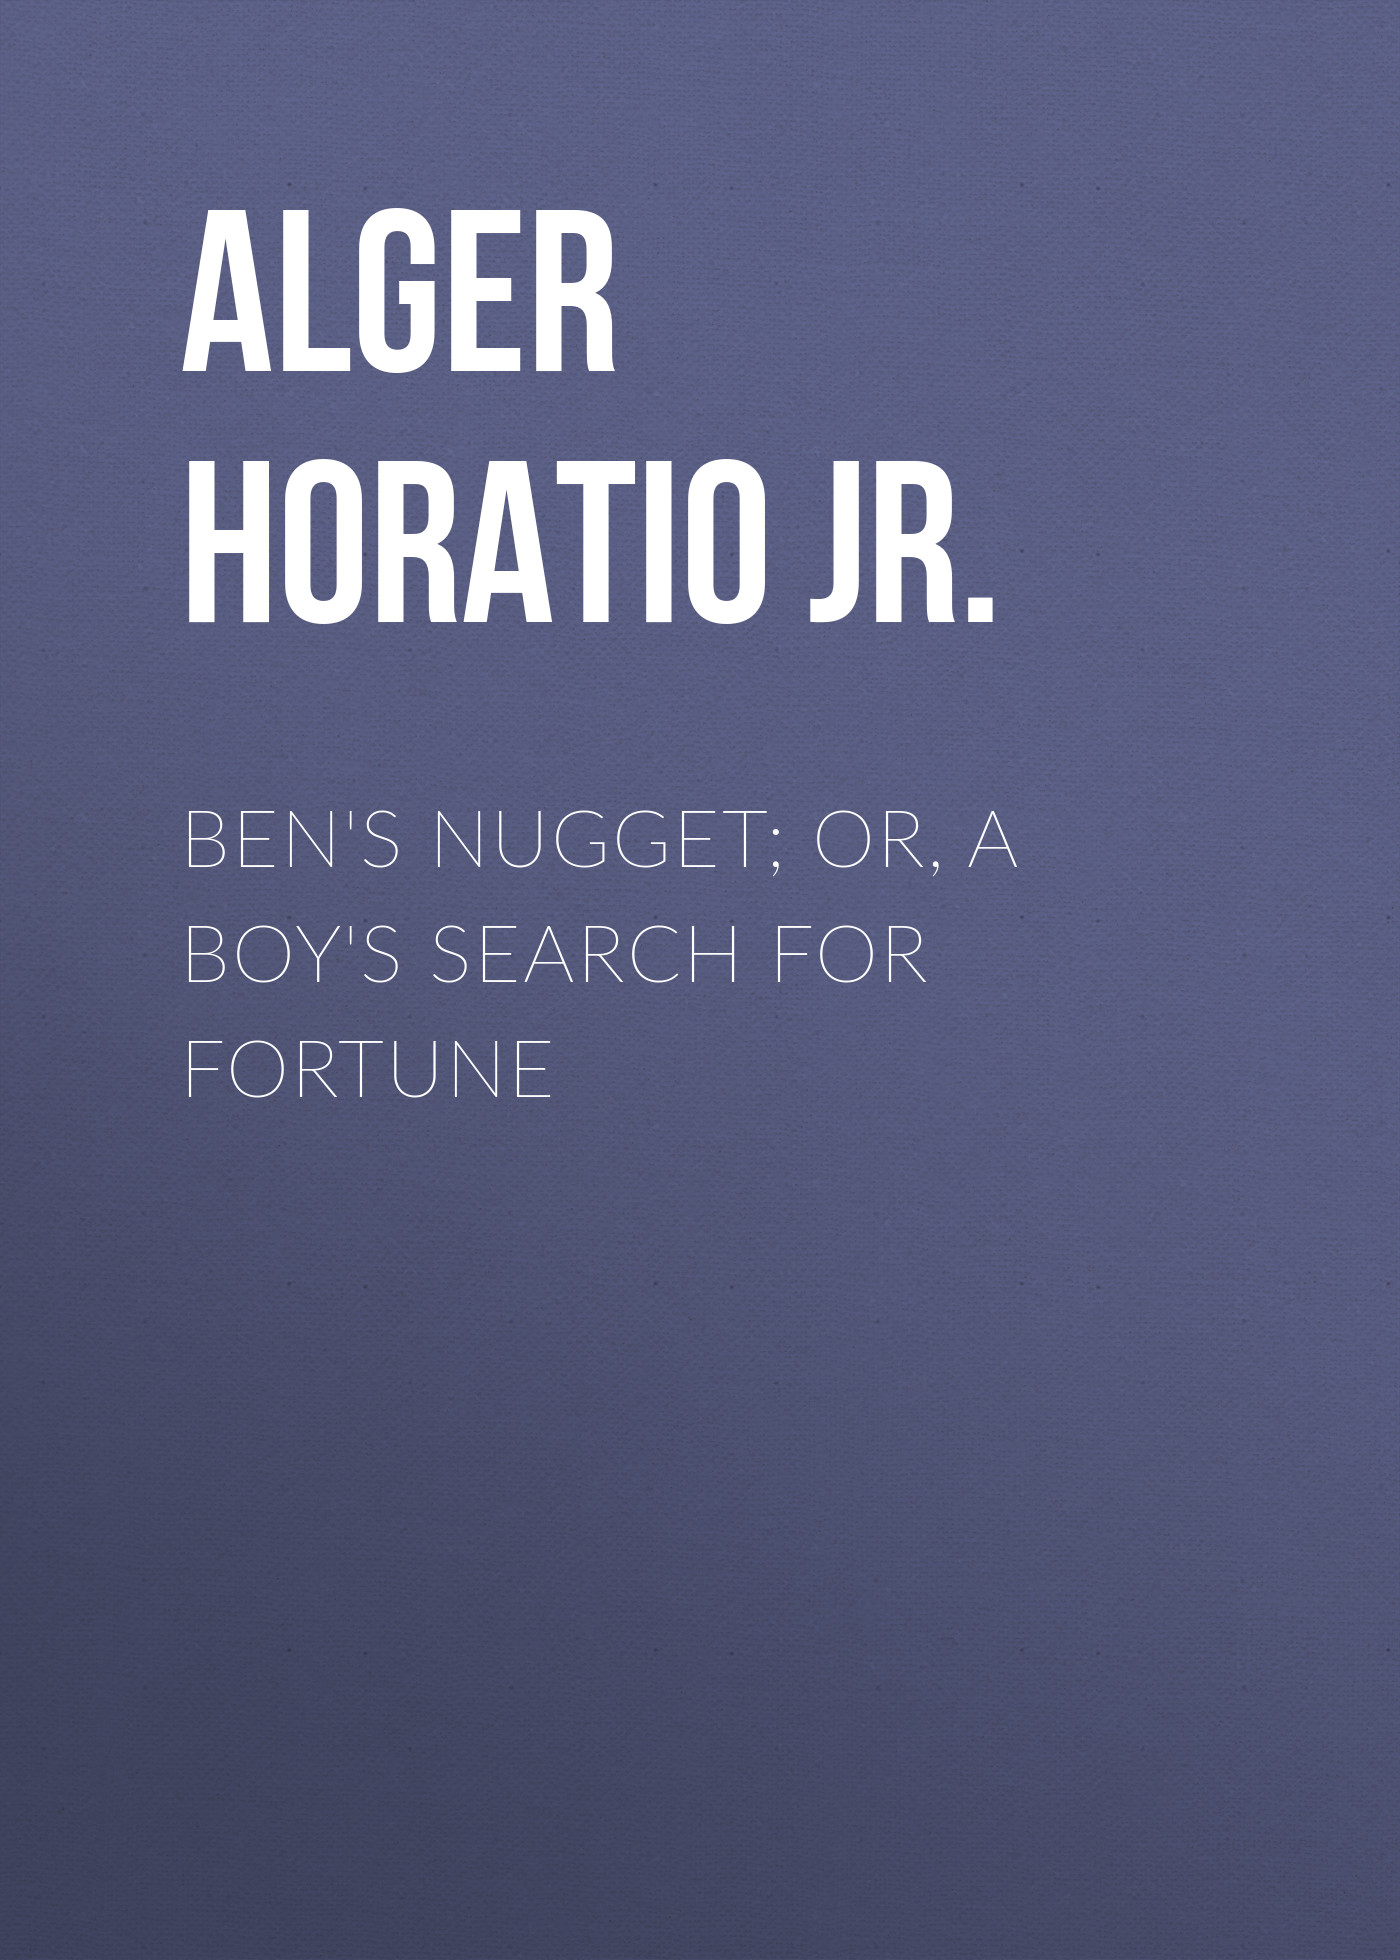 Книга Ben's Nugget; Or, A Boy's Search For Fortune из серии , созданная Horatio Alger, может относится к жанру Зарубежные детские книги, Юмор: прочее, Зарубежная старинная литература, Зарубежная классика, Зарубежный юмор. Стоимость электронной книги Ben's Nugget; Or, A Boy's Search For Fortune с идентификатором 34837750 составляет 0 руб.